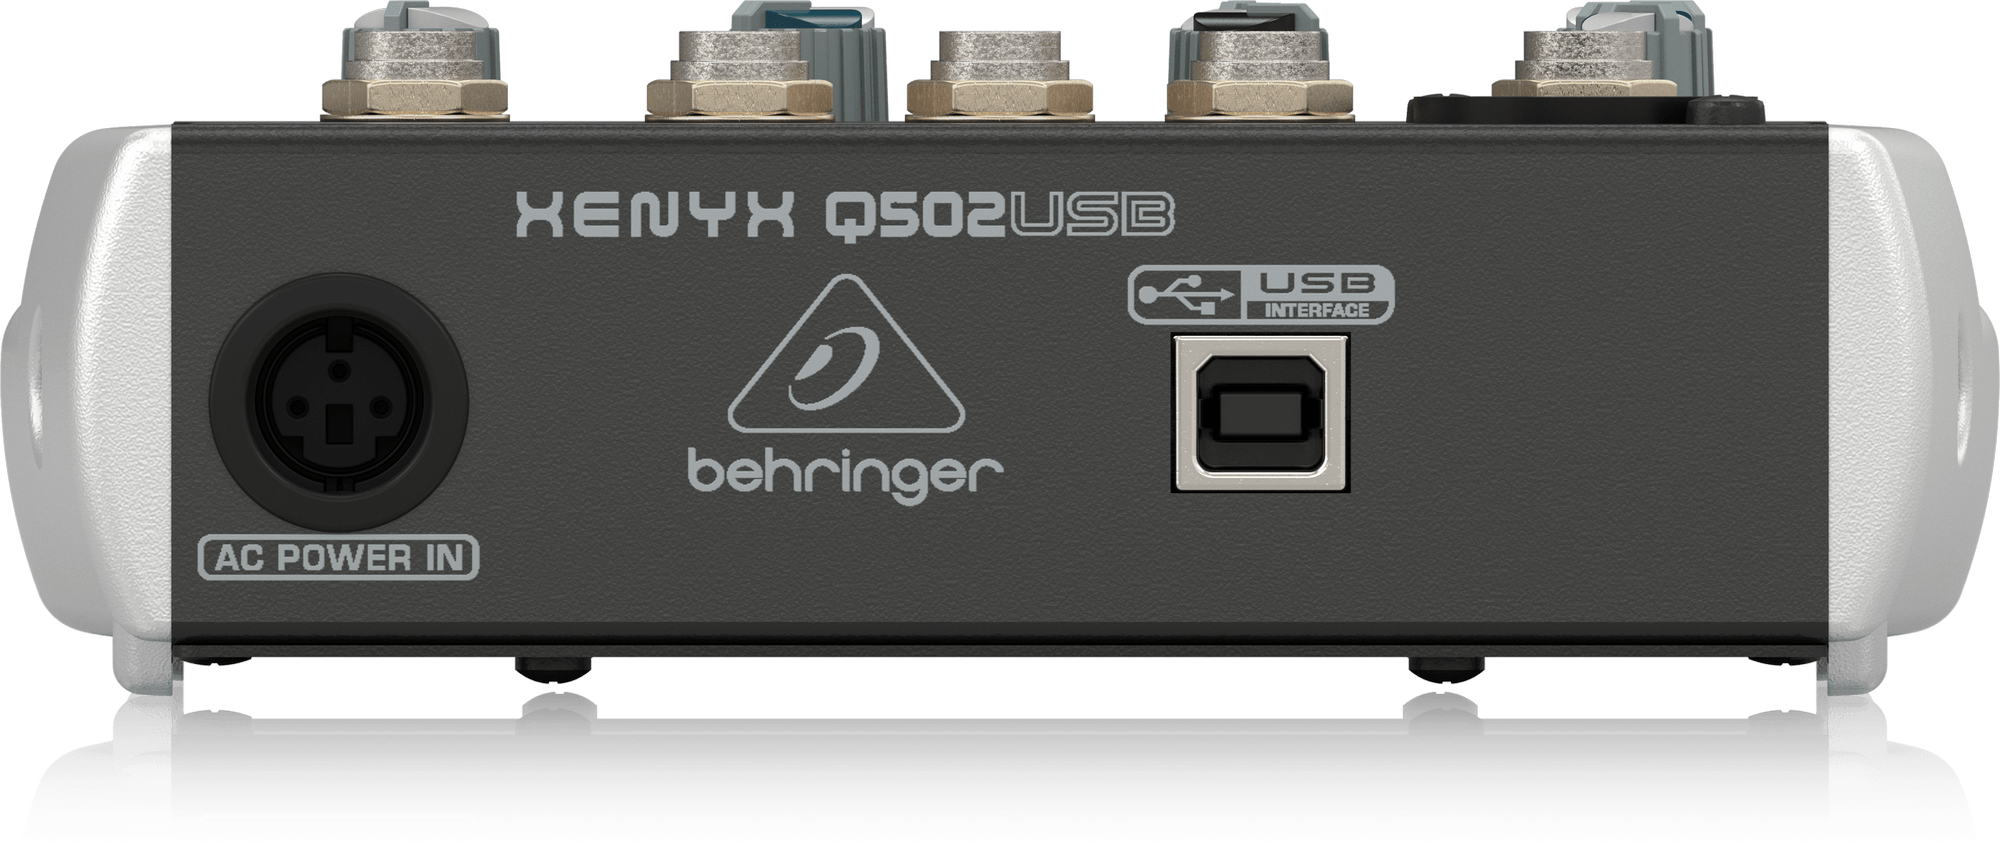 behringer xenyx q502usb fl studio